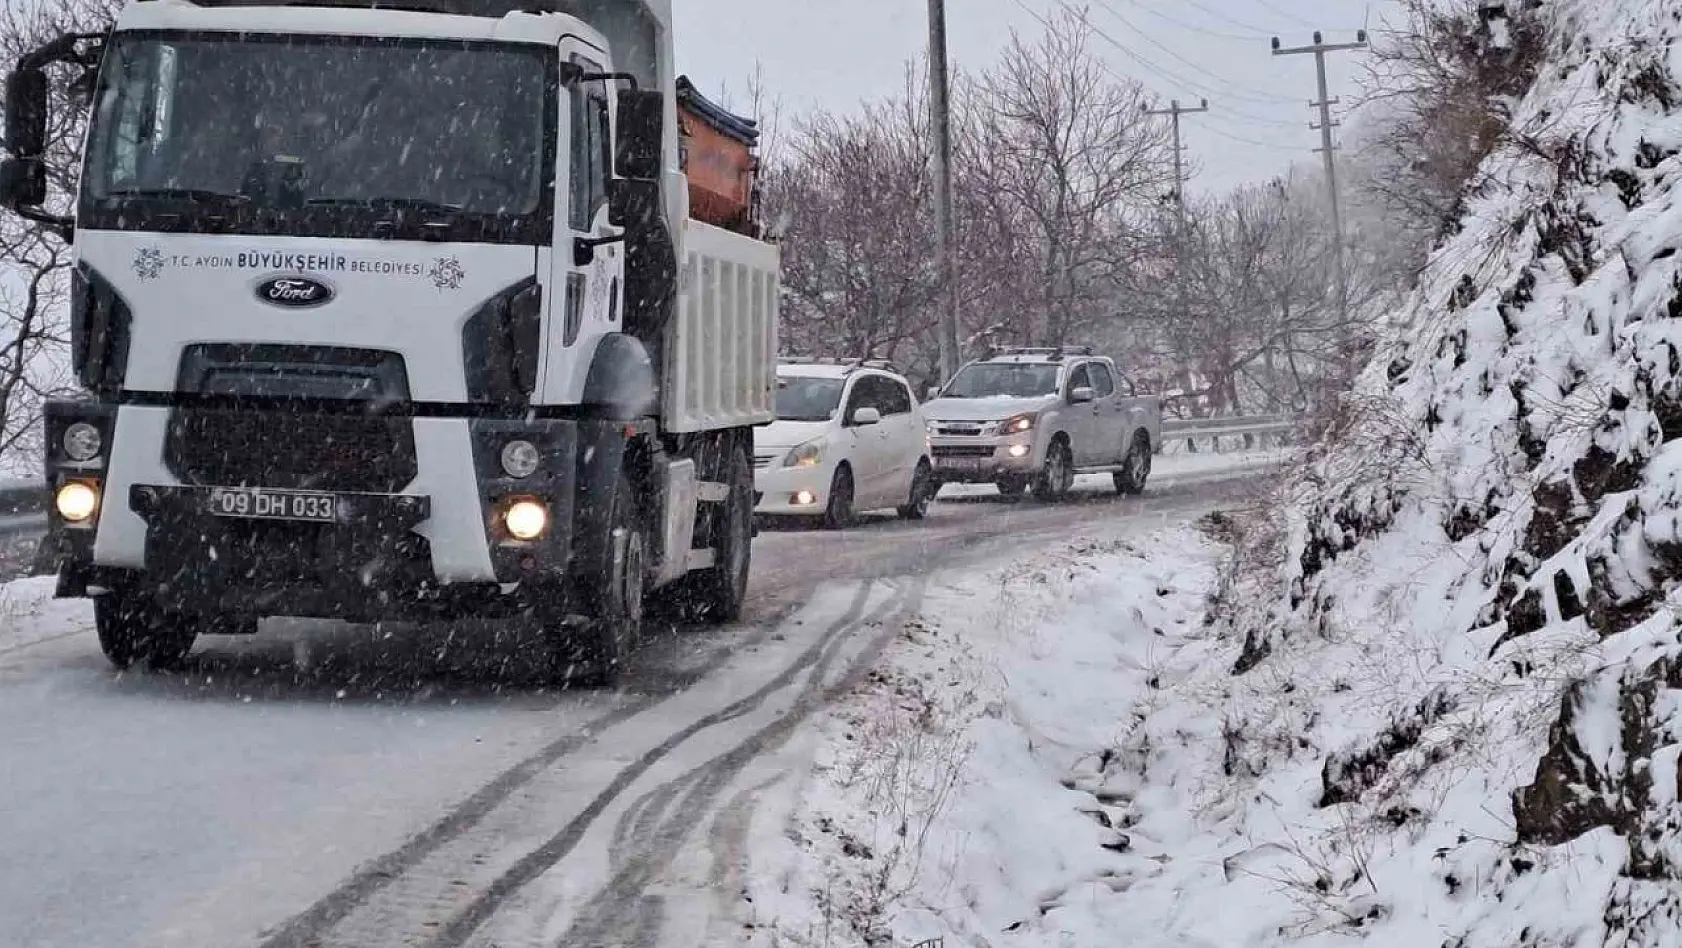 Büyükşehir ekipleri, karla mücadele çalışmalarına devam ediyor